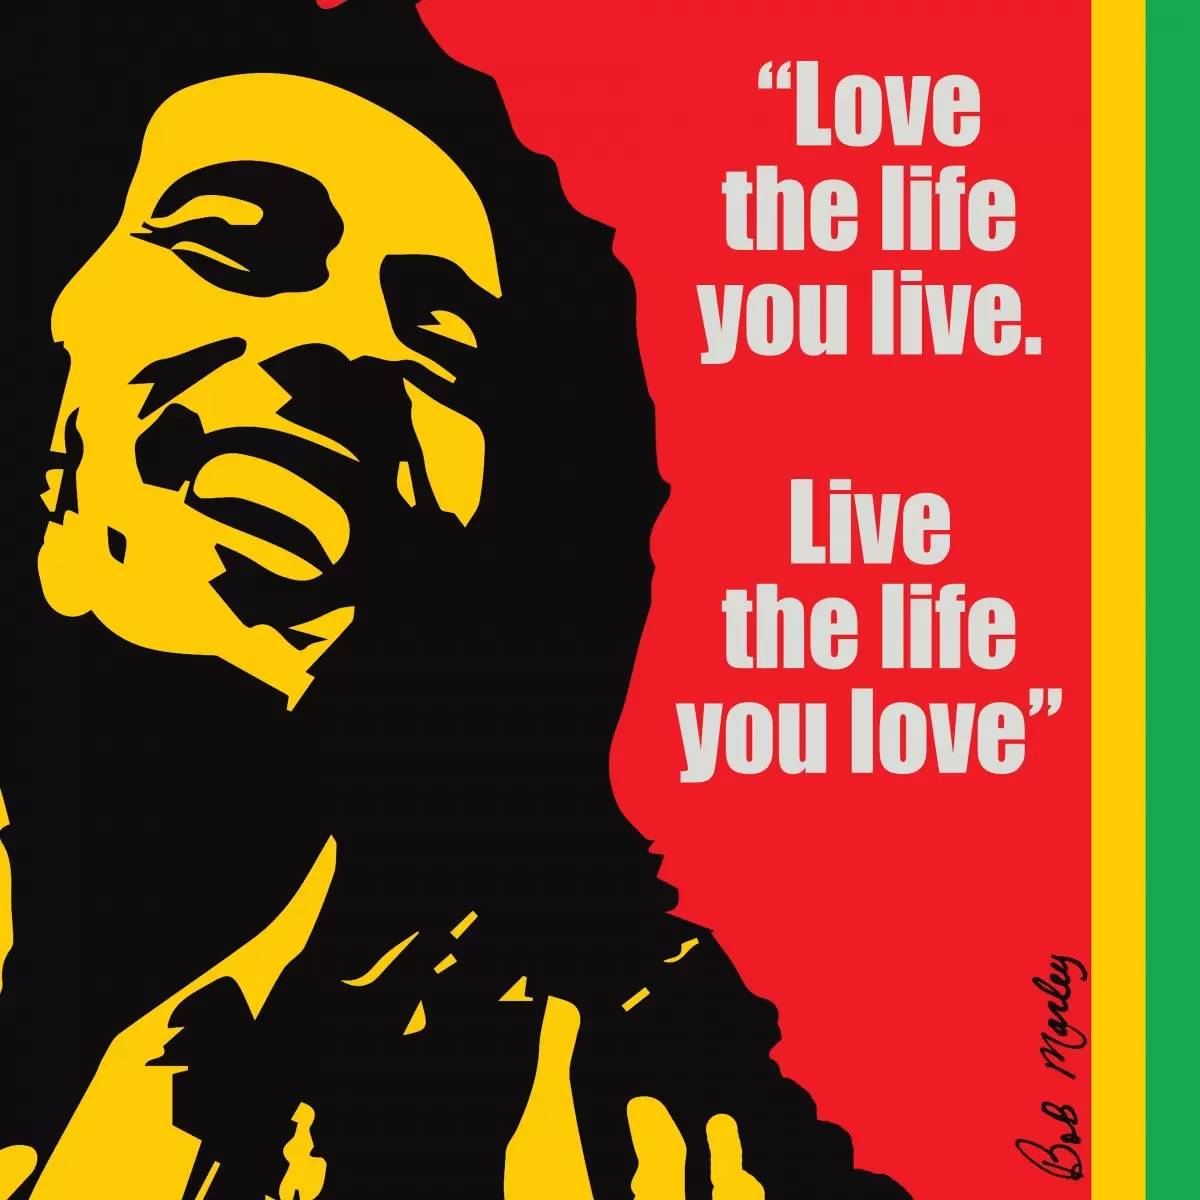 Bob Marley Quote - מסגרת עיצובים - תמונות לחדר שינה נוער טיפוגרפיה דקורטיבית  - מק''ט: 240821